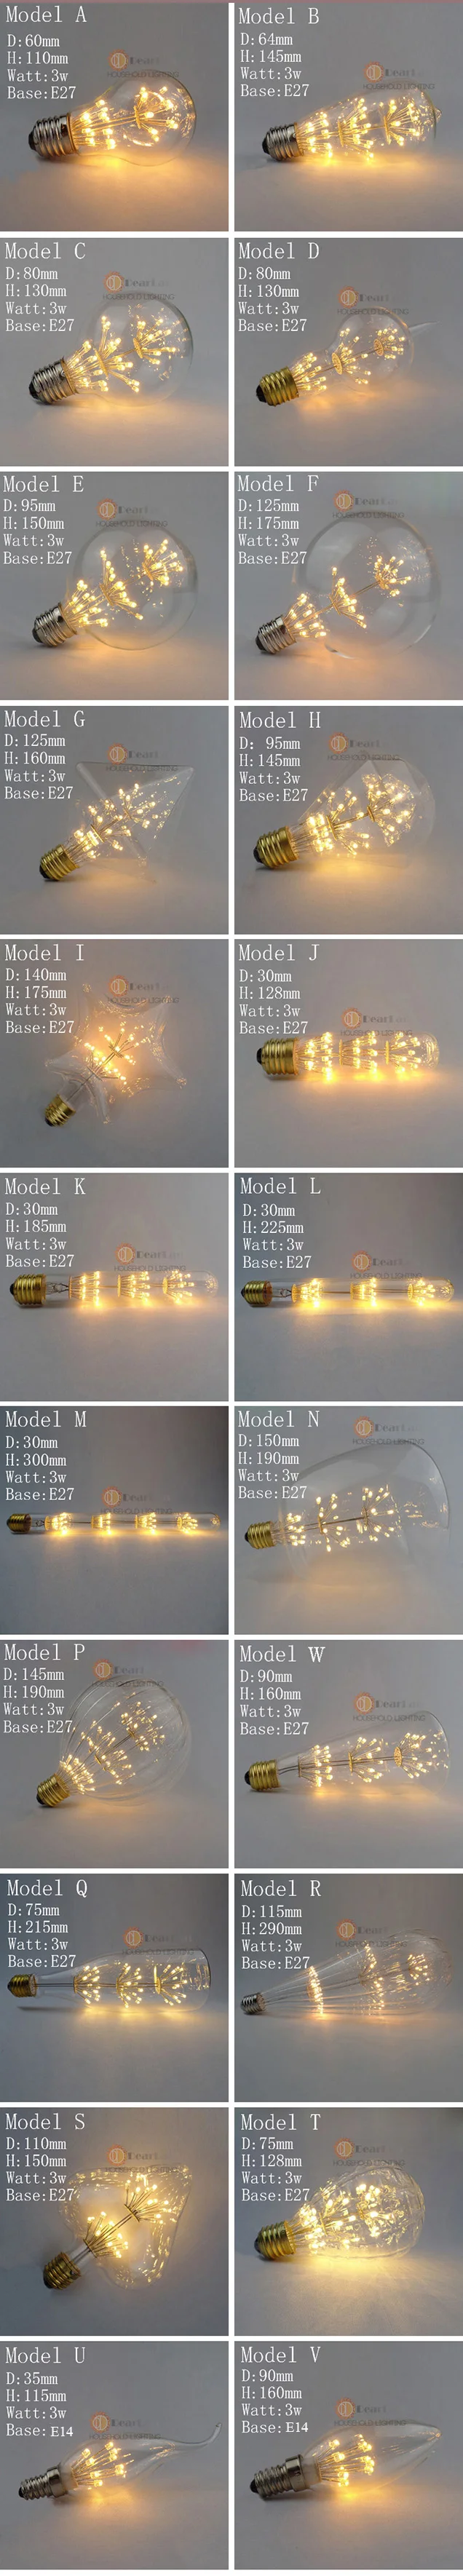 220 V-240 V E27 винтажный Ретро светодиодный светильник Эдисона 4W ST64/A19/G80 внутренний светодиодный светильник, Ночной светильник, рождественские подарки(BM50